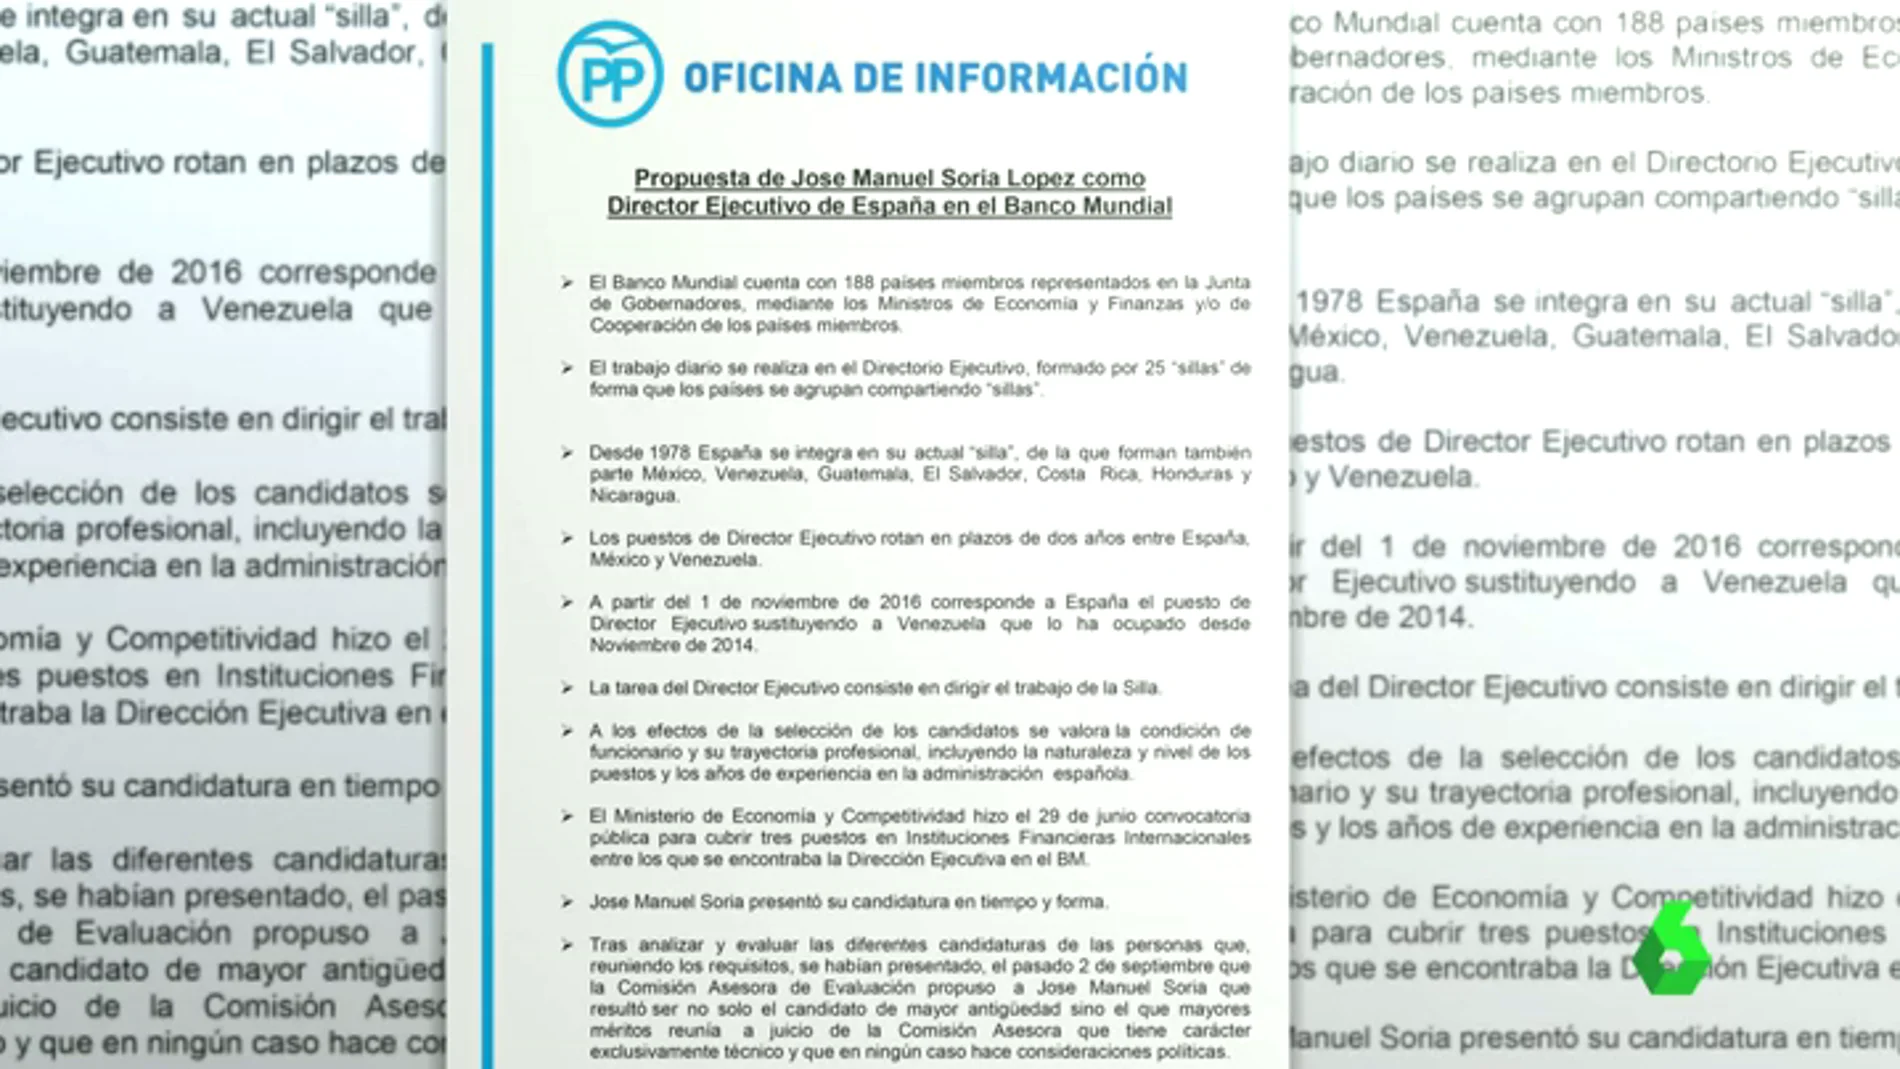 Frame 46.438726 de: laSexta Noticias accede al argumentario que ha distribuido el PP para defender el nombramiento del exministro Soria